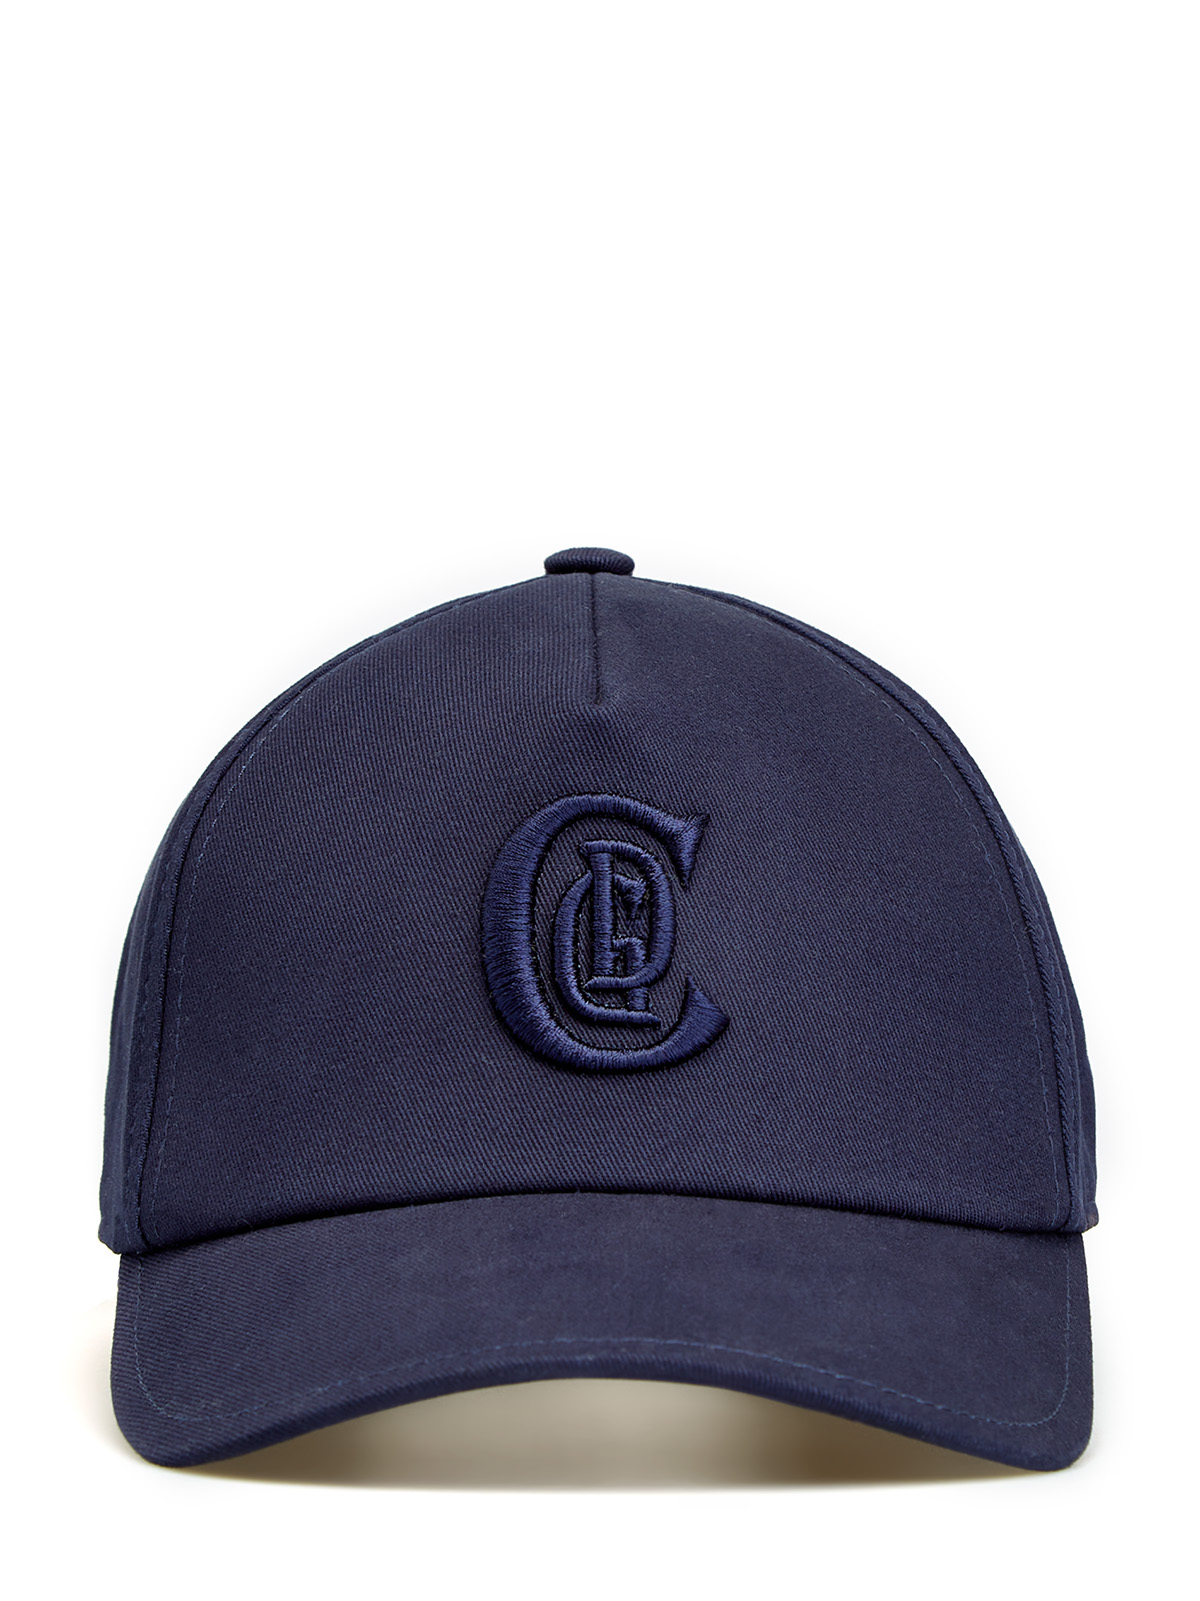 Бейсболка из хлопкового габардина с вышитым логотипом в тон CUDGI, цвет синий, размер 58;59